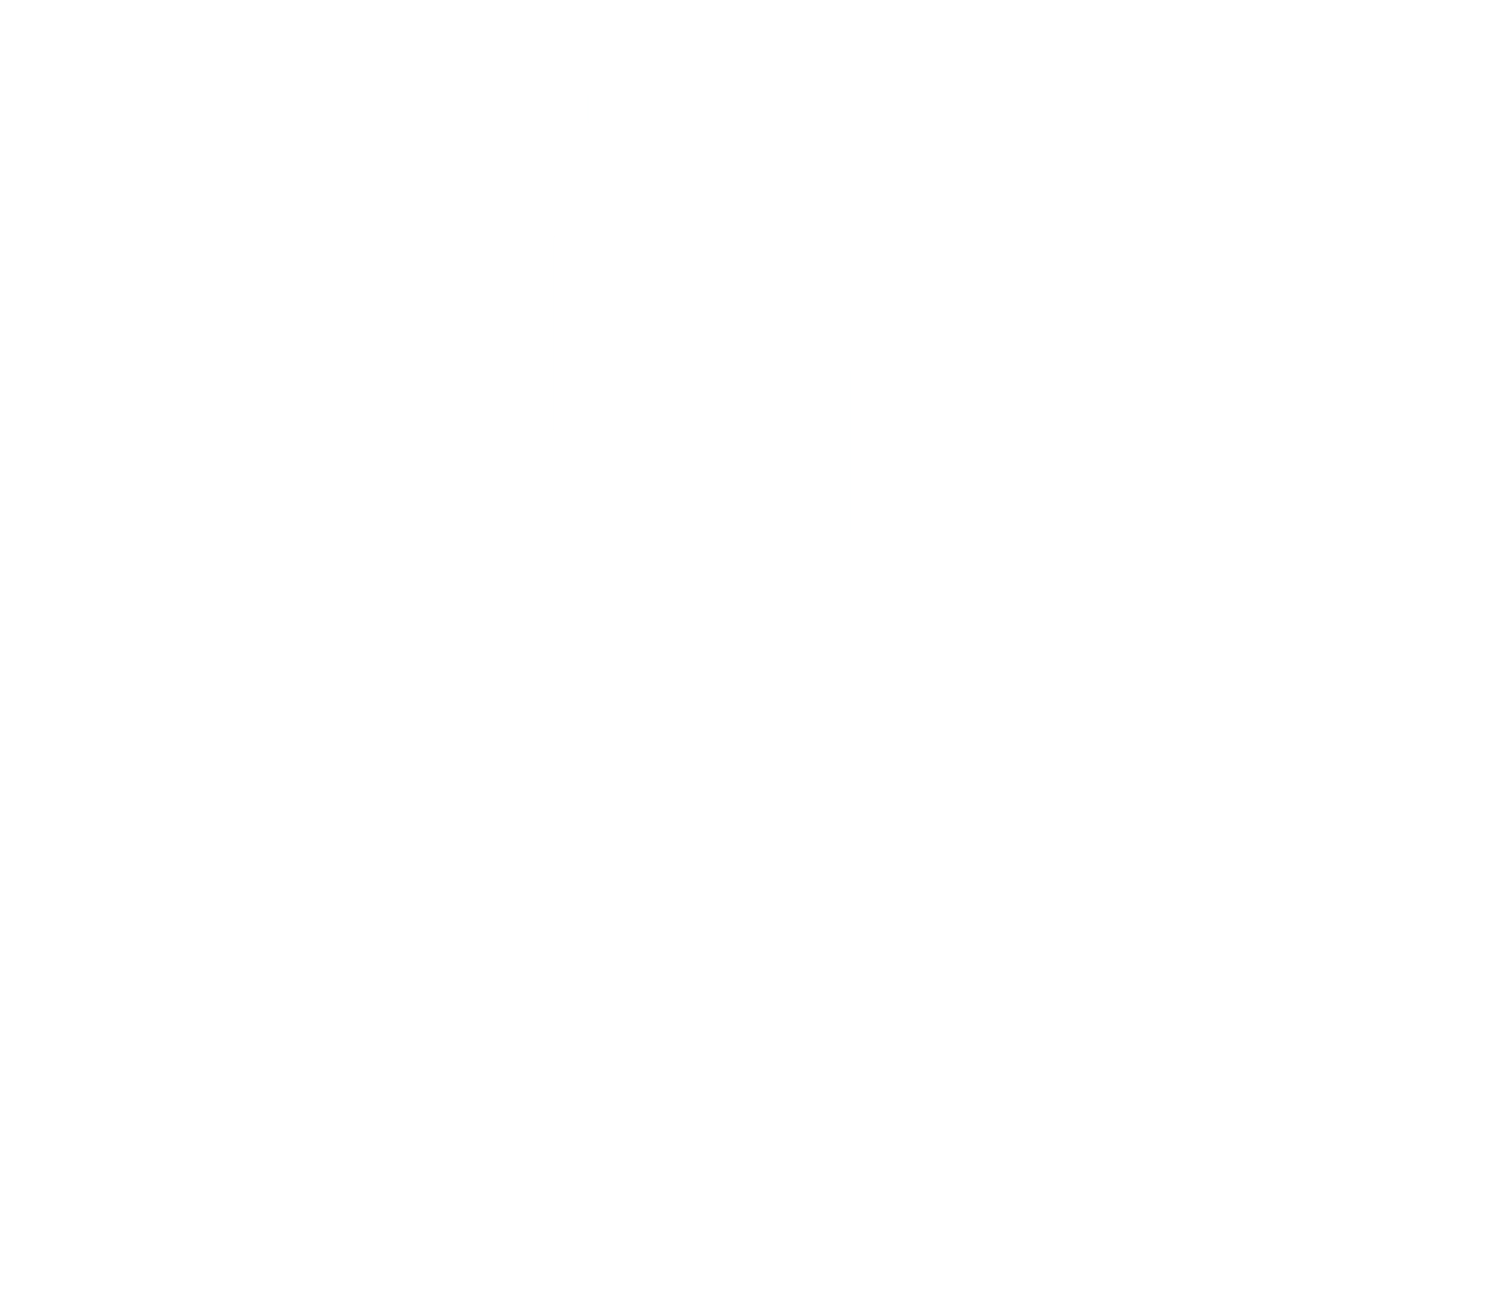 Stephen Olker Photography